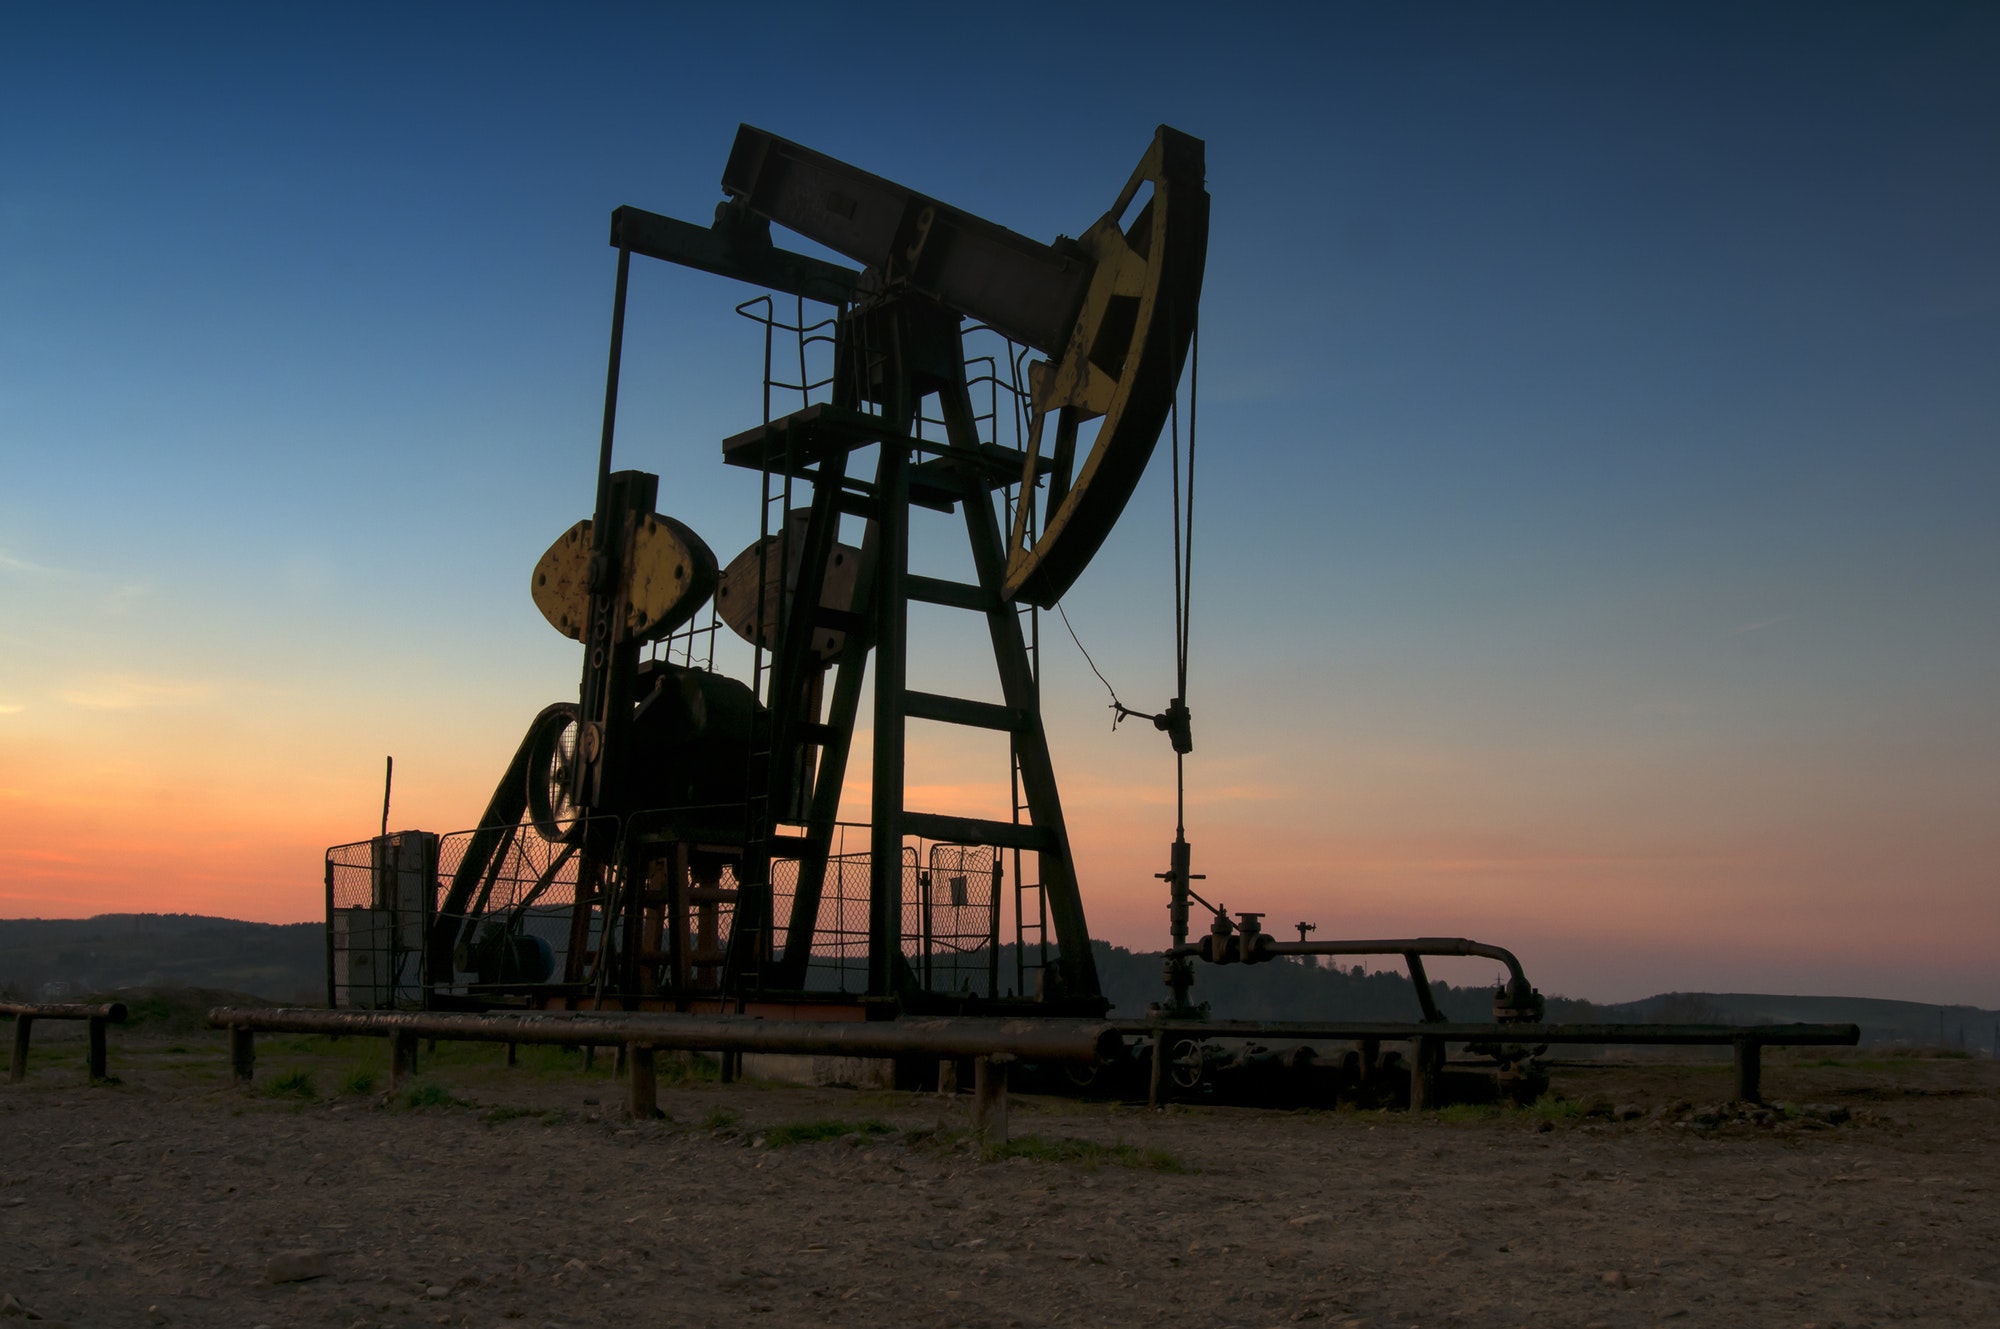 La pompe à pétrole au coucher du soleil